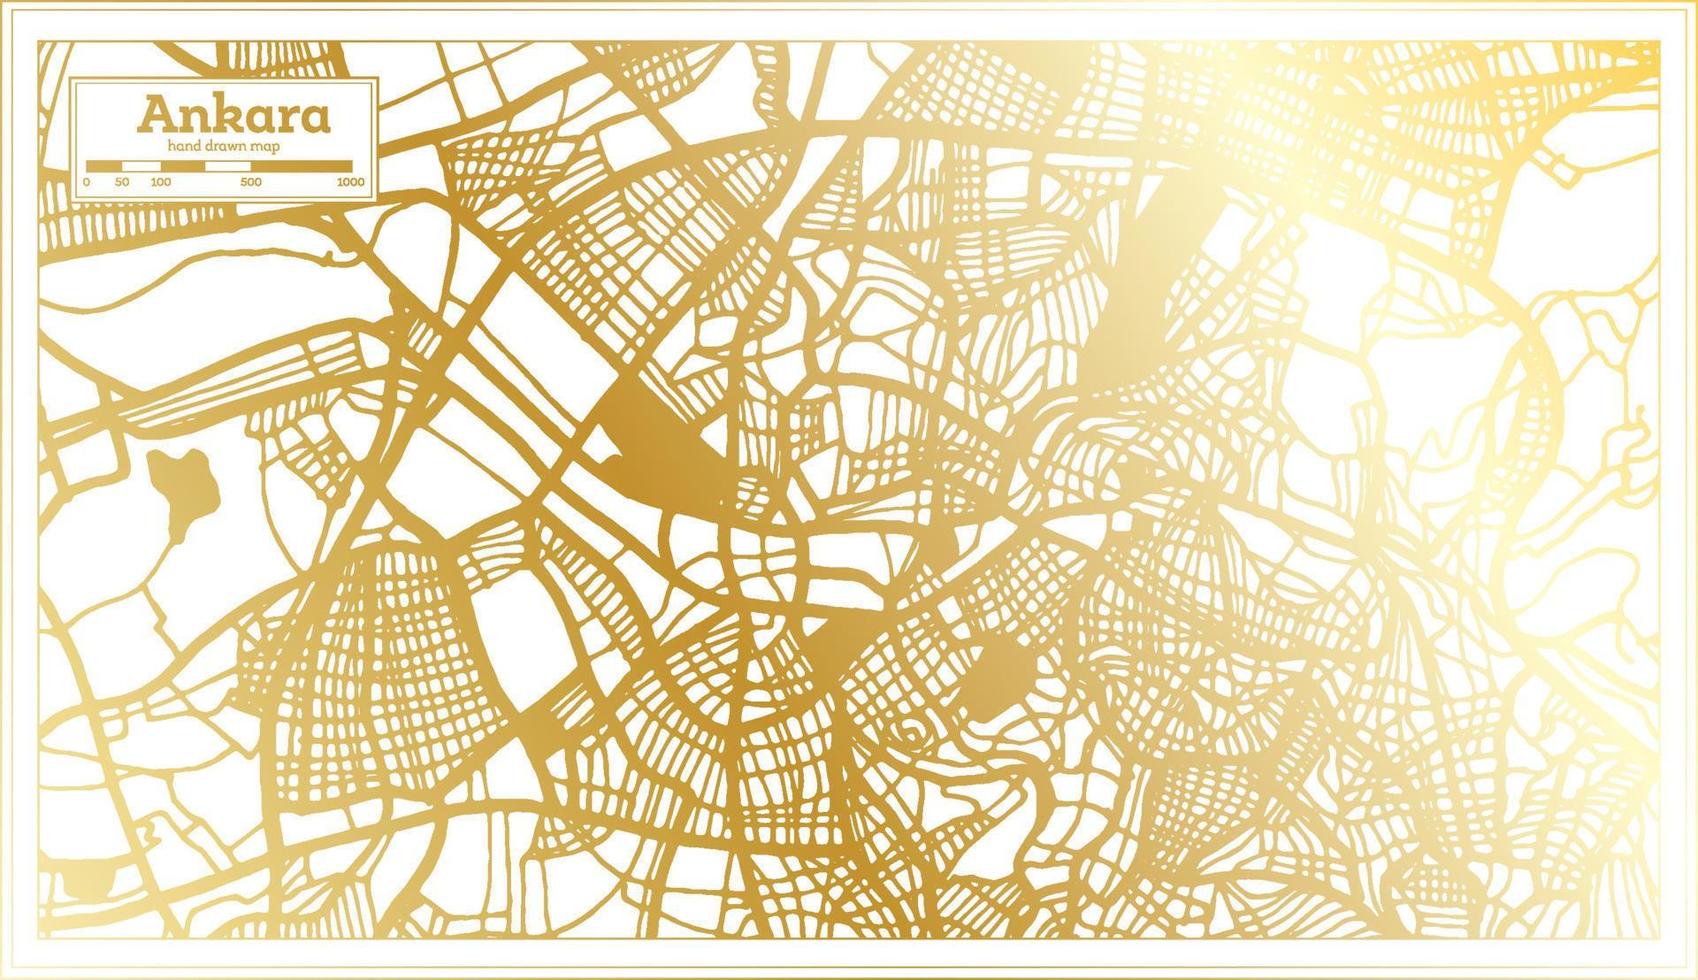 plan de la ville d'ankara en turquie dans un style rétro de couleur dorée. carte muette. vecteur